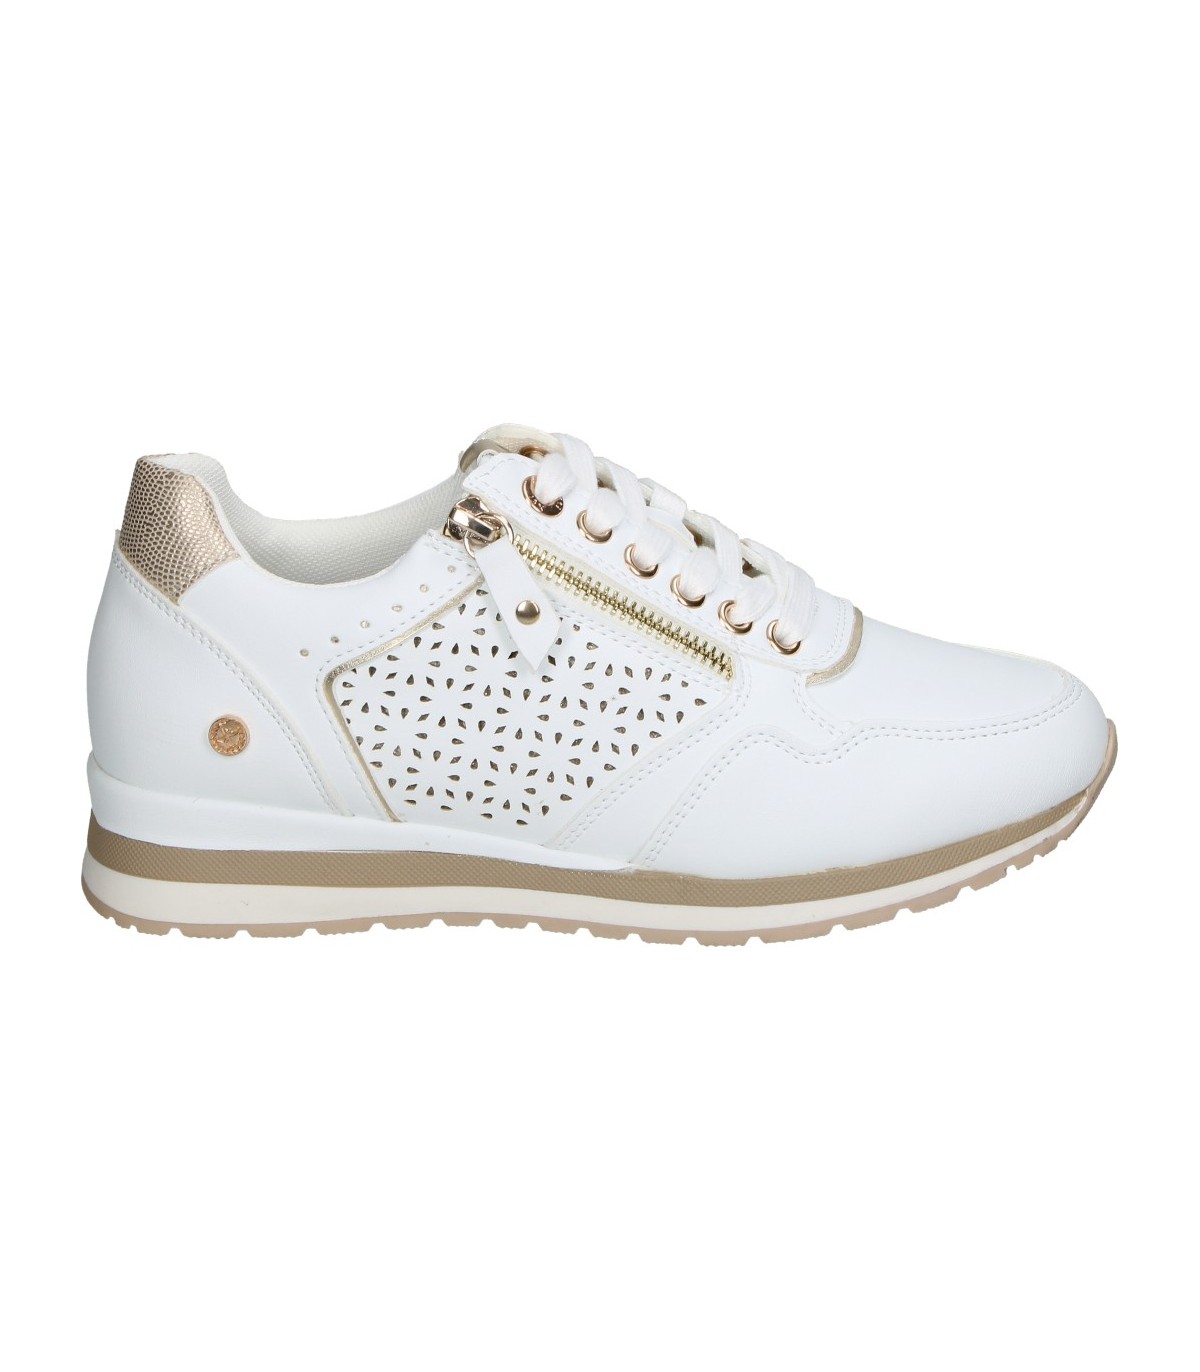 Xti Zapatillas deportivas de mujer color blanco con cuña por 21,95€.